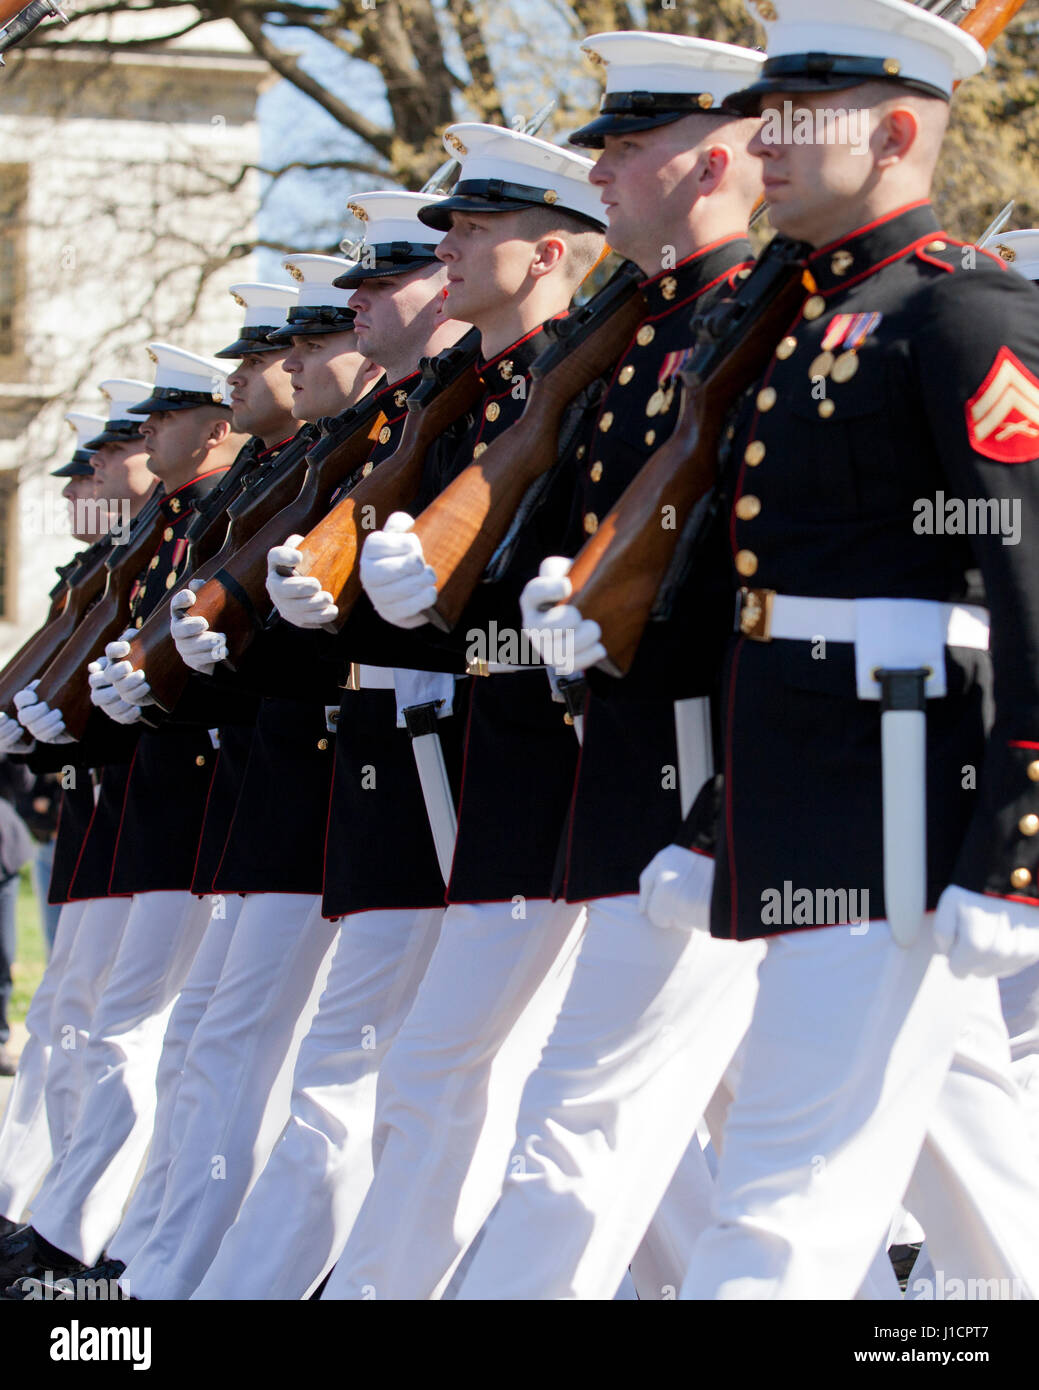 Garde d'honneur de l'US Marine Corps marchant au cours de parade - USA Banque D'Images